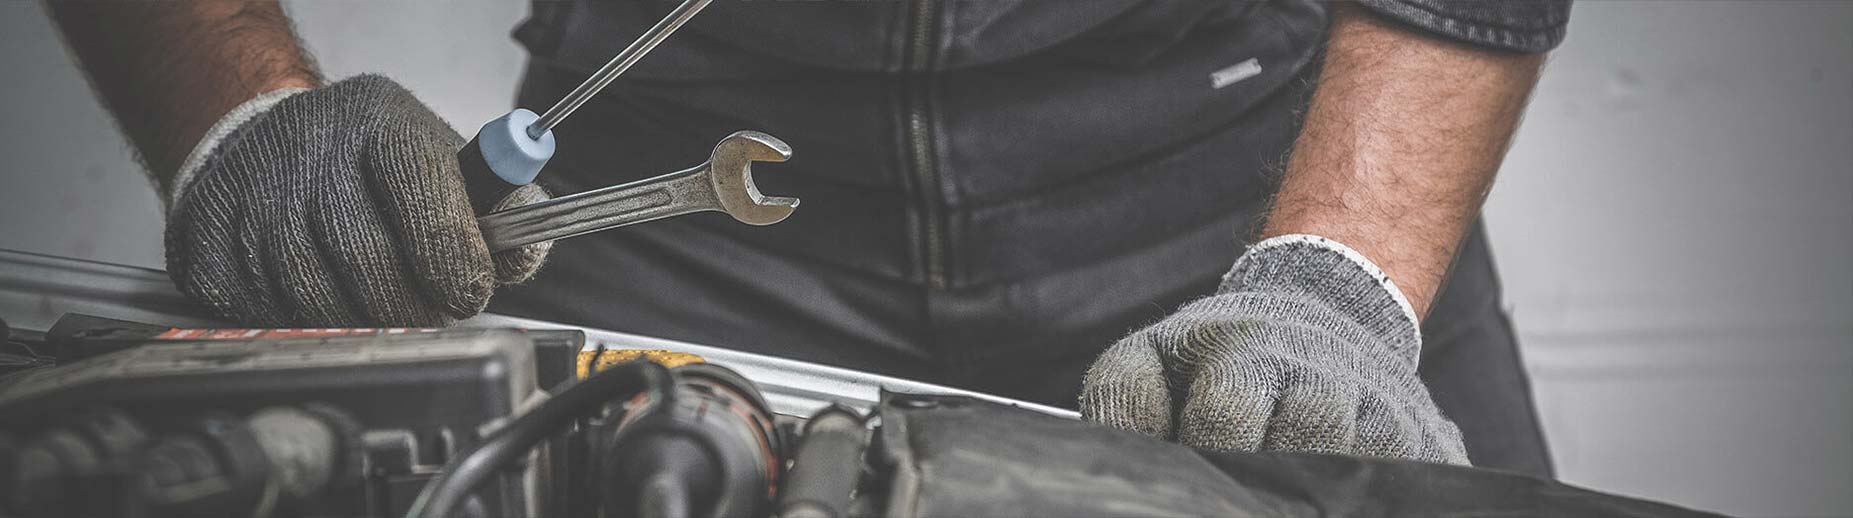 Chilliwack Auto Repair, Auto Detailing and Mechanic